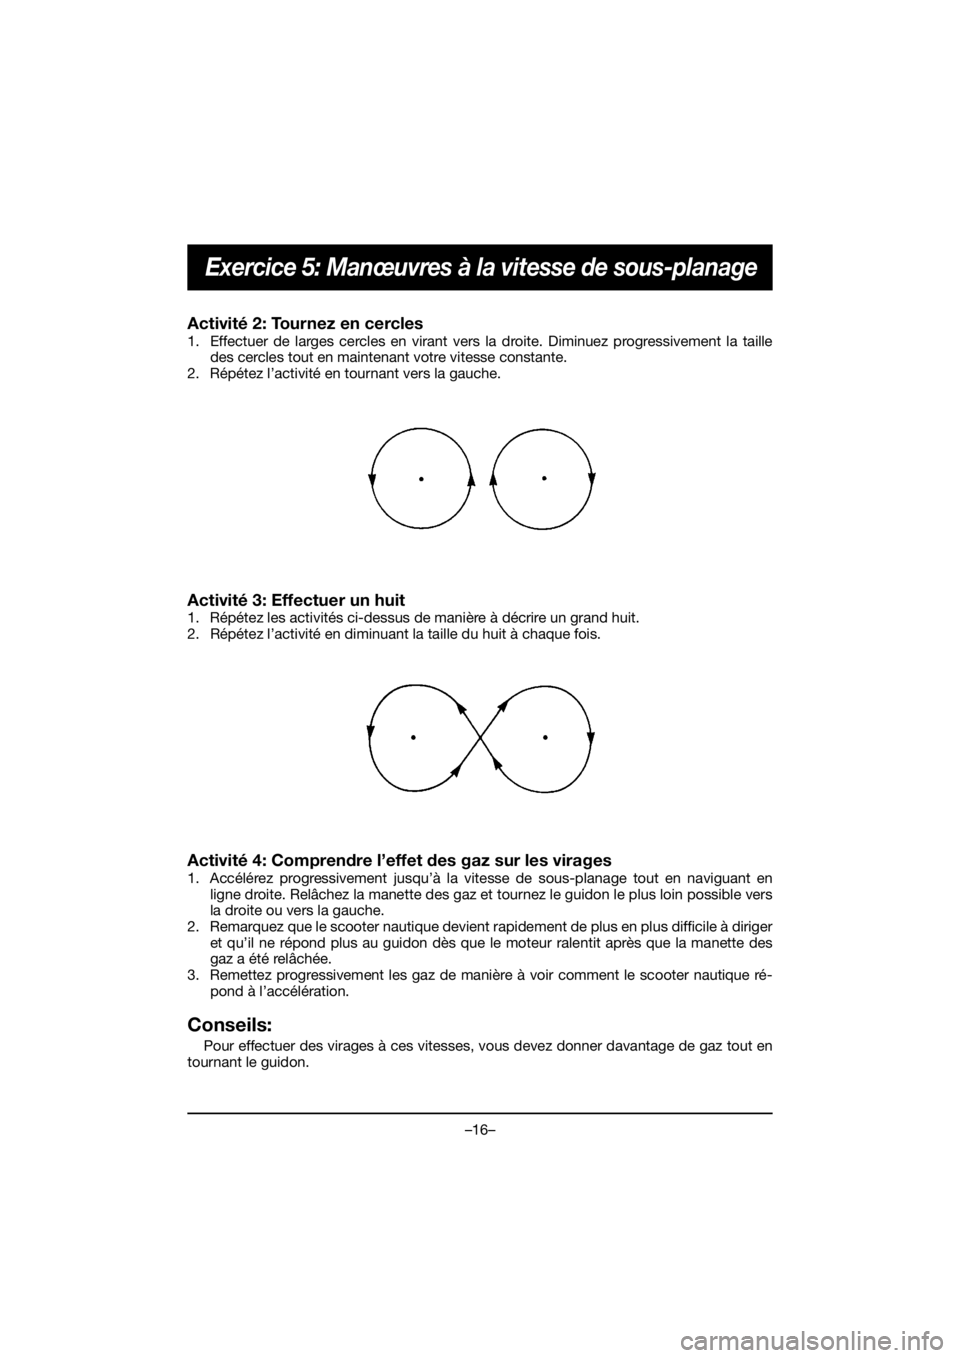 YAMAHA EX 2021  Manuale de Empleo (in Spanish) –16–
Exercice 5: Manœuvres à la vitesse de sous-planage
Activité 2: Tournez en cercles 
1. Effectuer de larges cercles en virant vers la droite. Diminuez progressivement la taille
des cercles t